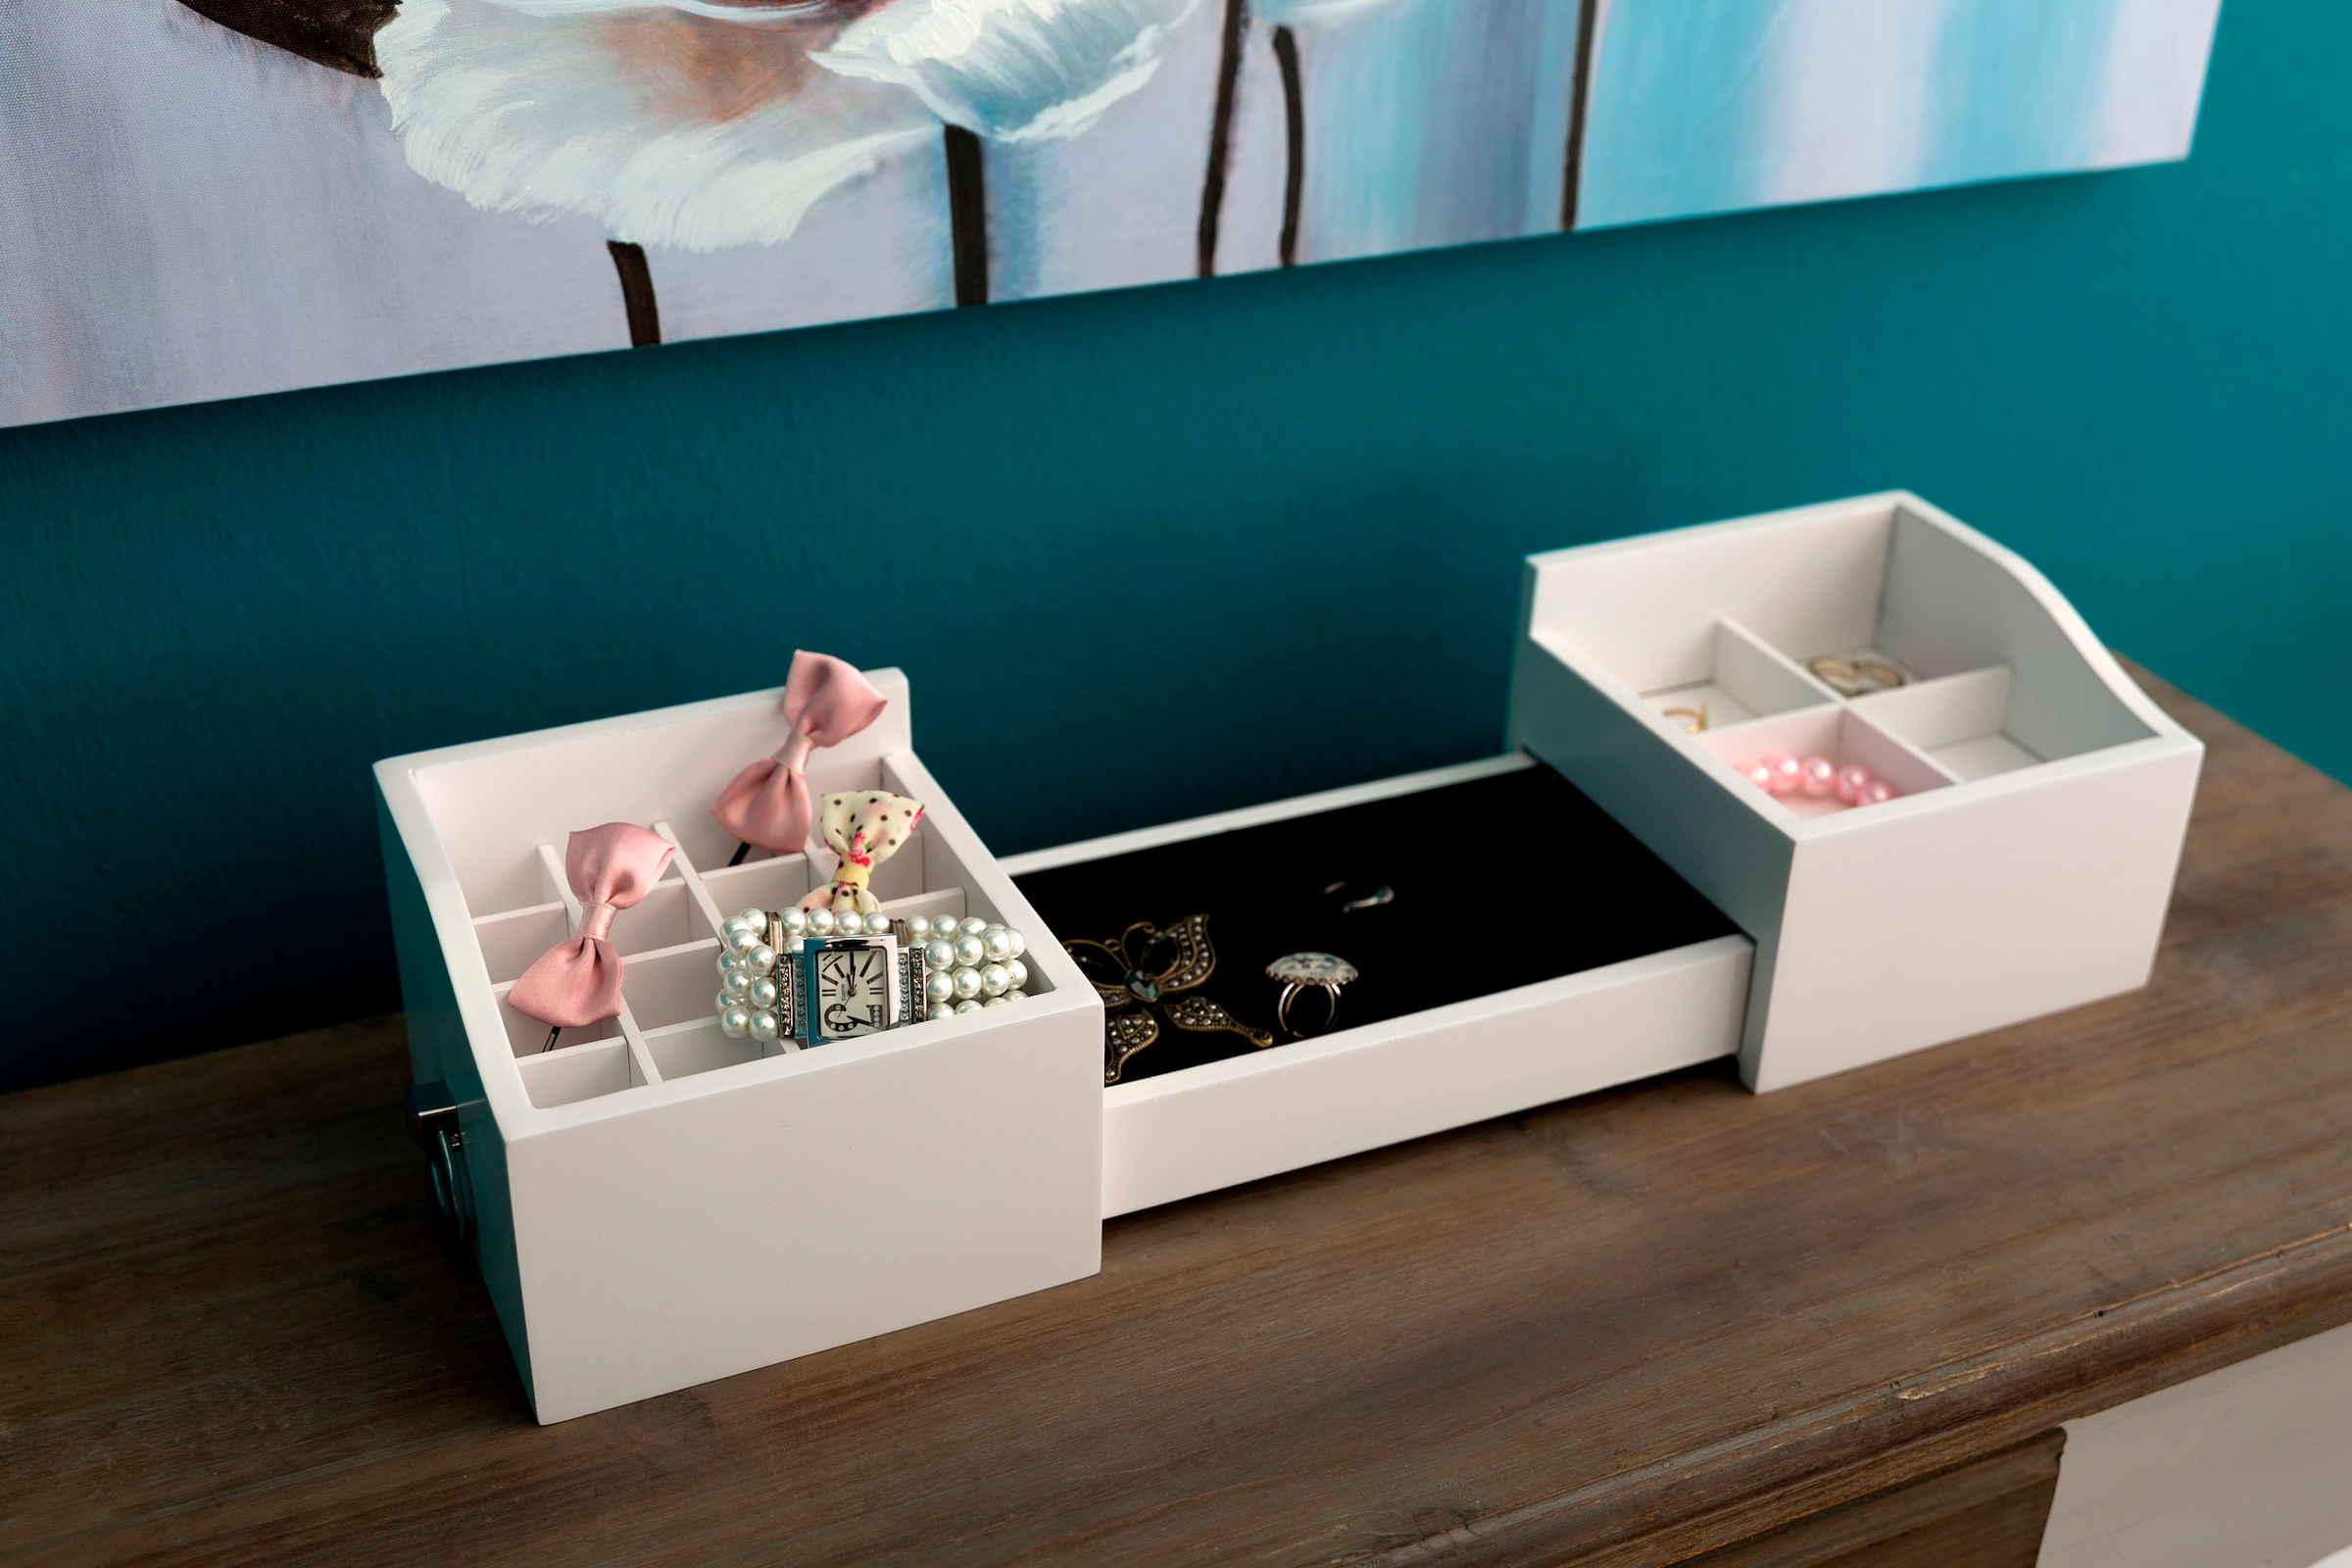 Myflair Möbel & Accessoires Kosmetikbox »Marlisa, weiss«, ausziehbar, auch ideal als Schmuckkasten